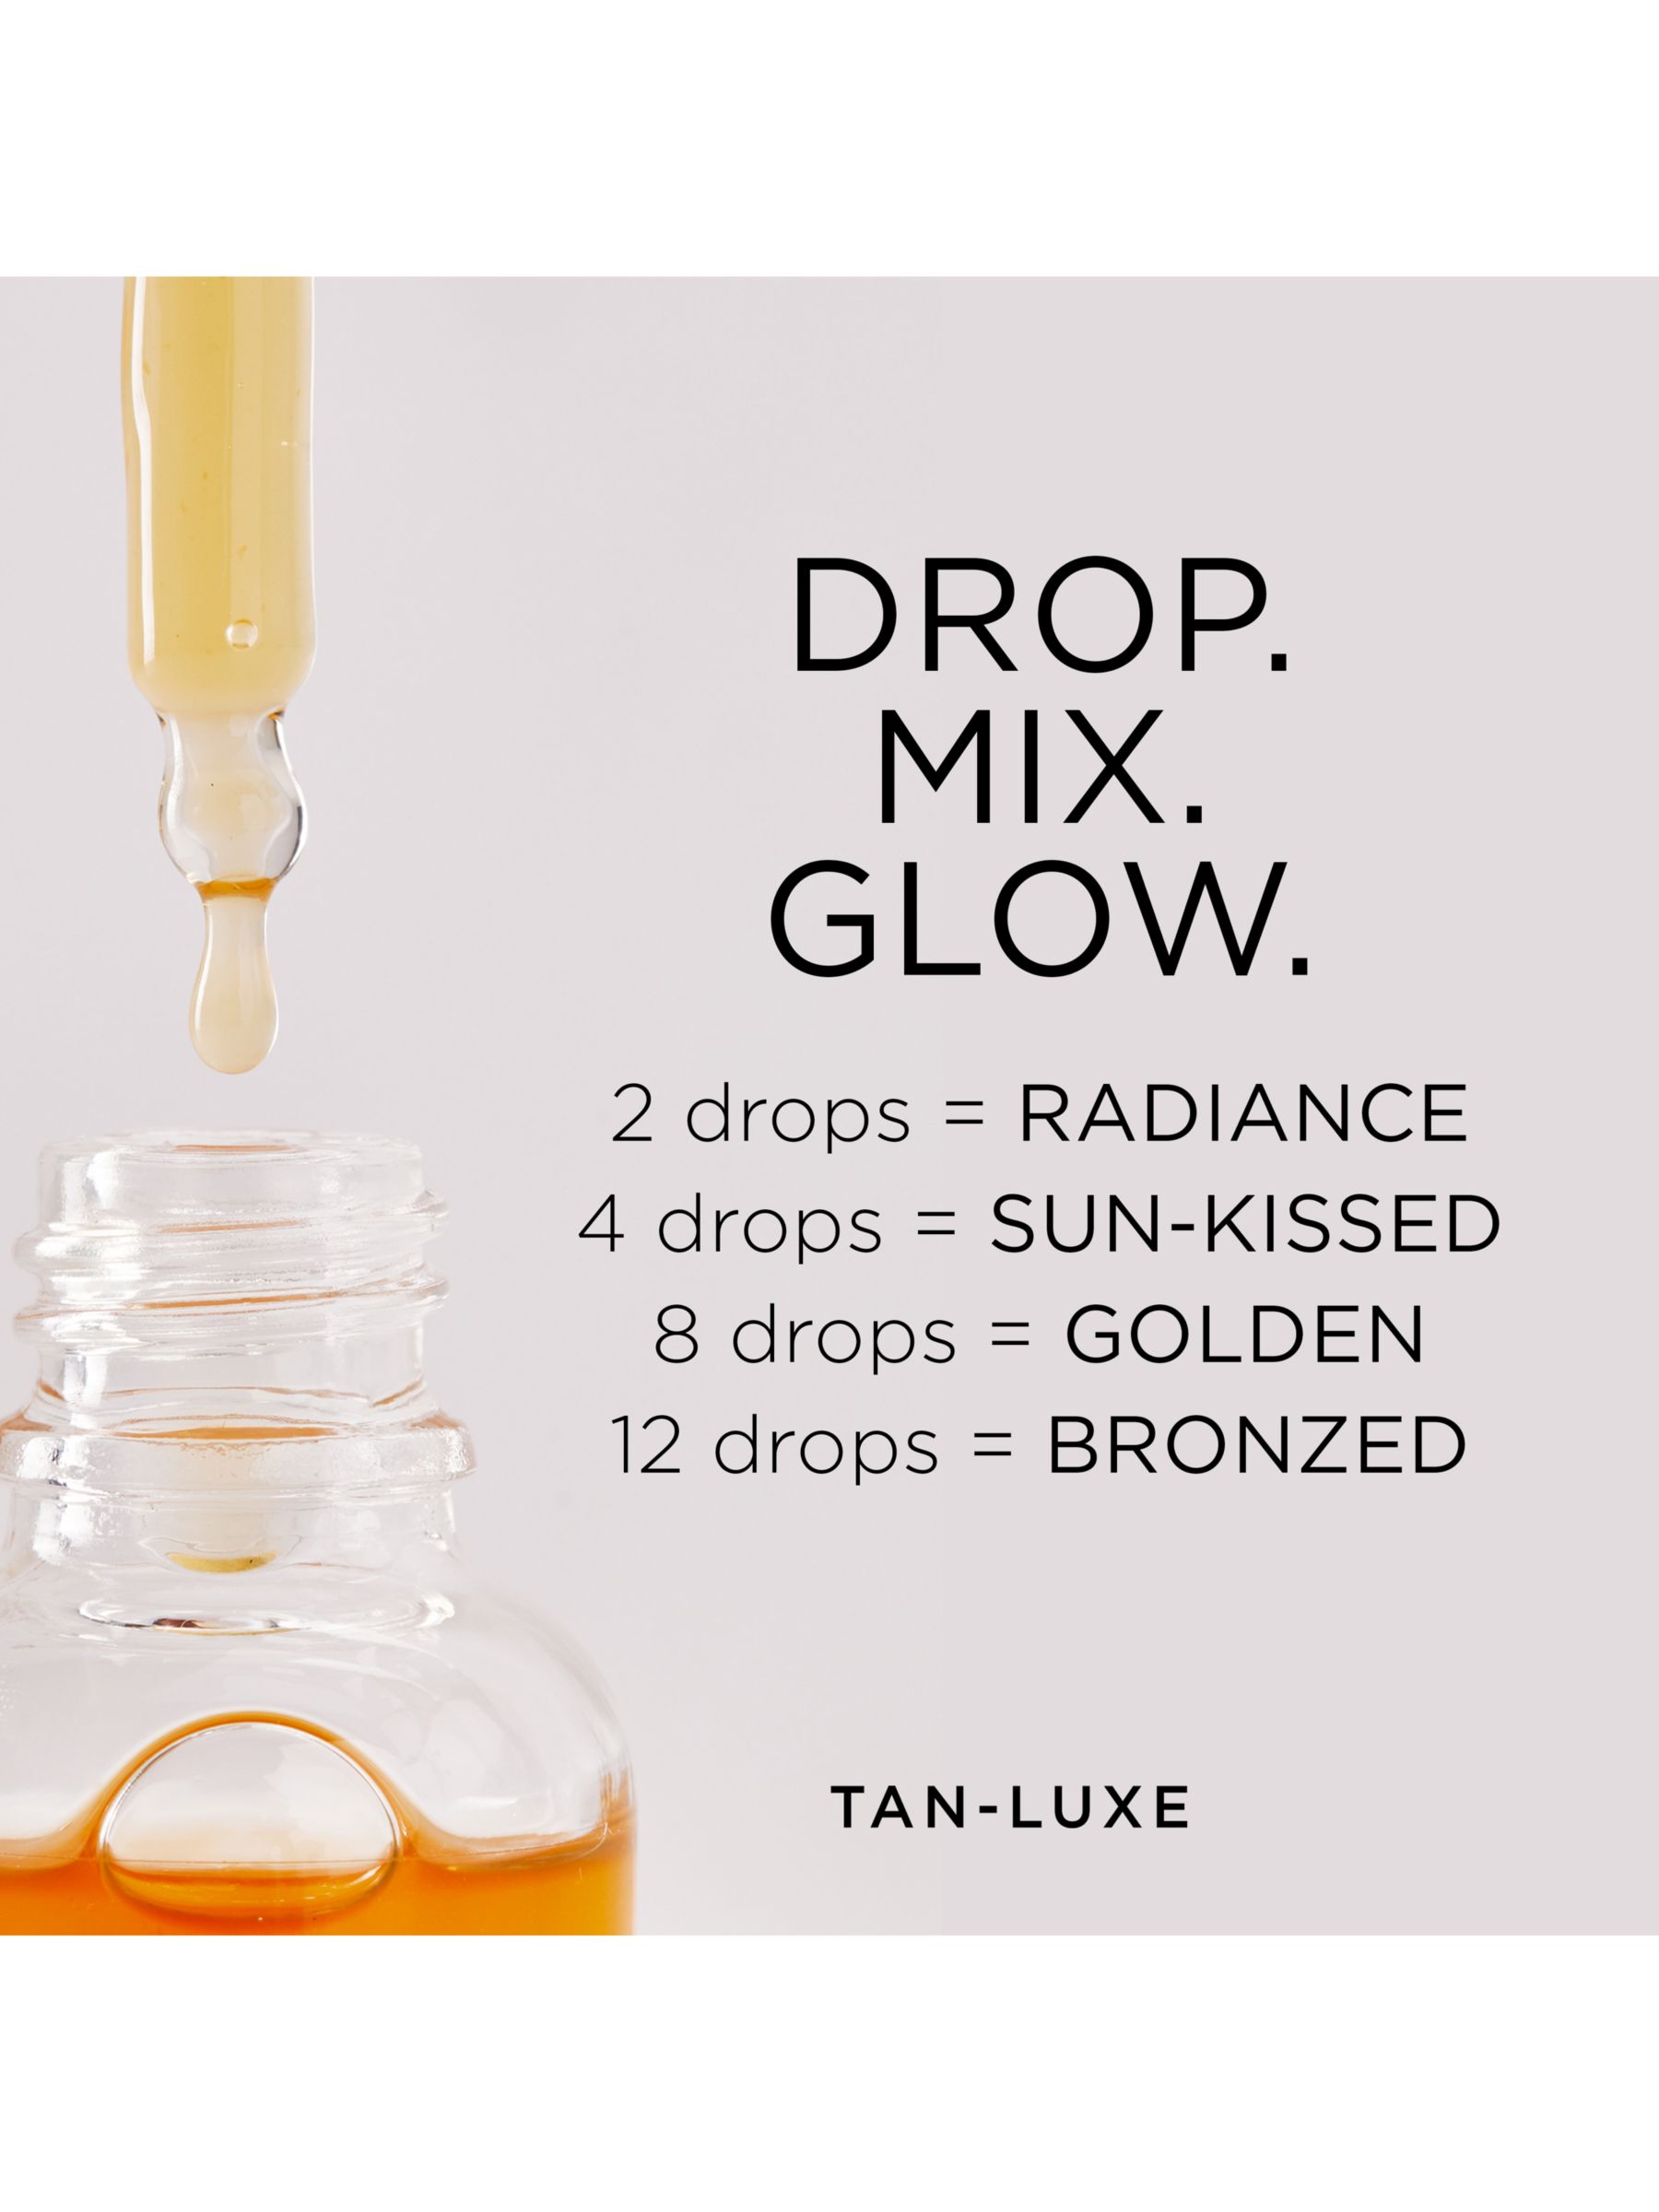 Tan-Luxe The Face Illuminating Self-Tan Drops, Medium/Dark 4